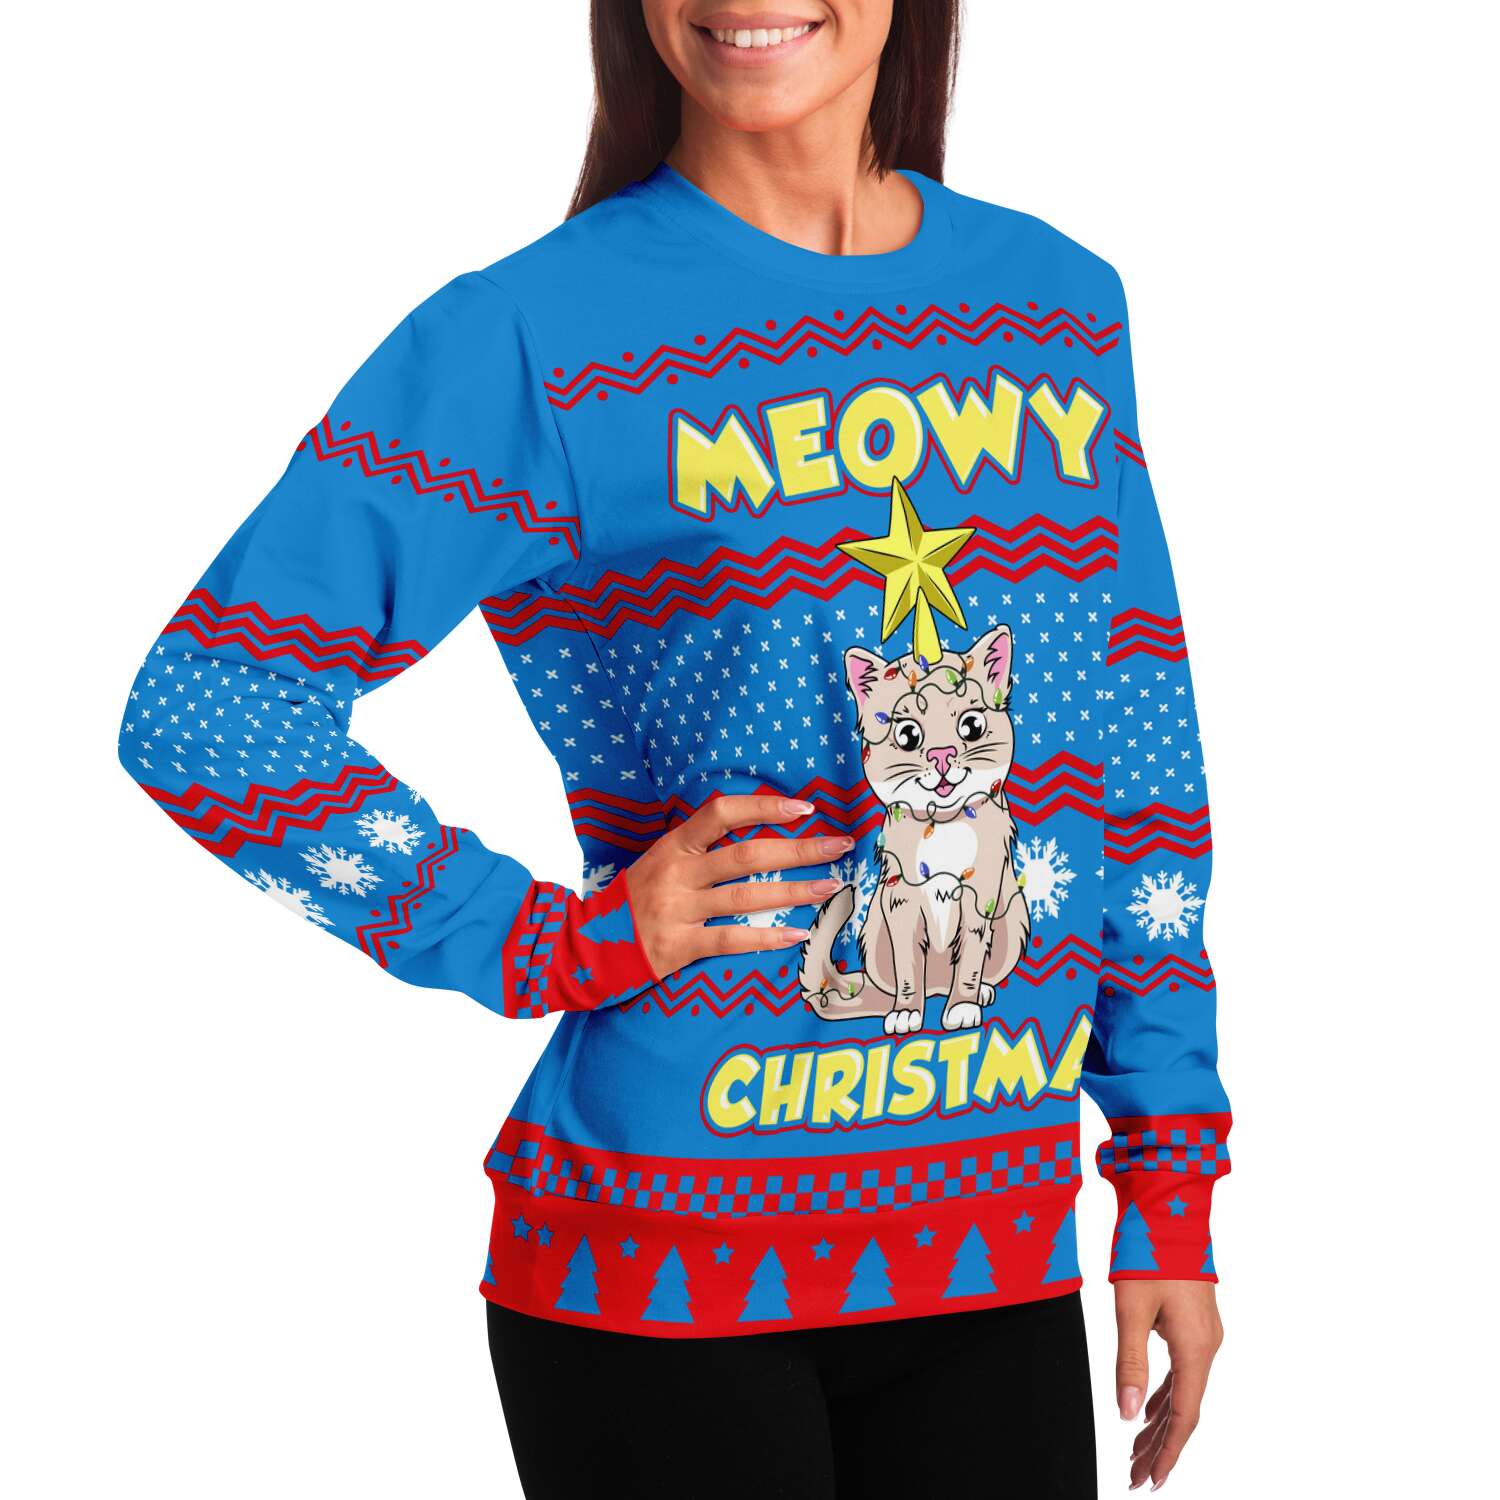 Meowy Christmas Sweatshirt | Unisex Ugly Christmas Sweater, Xmas Sweater, Holiday Sweater, Festive Sweater, Funny Sweater, Funny Party Shirt